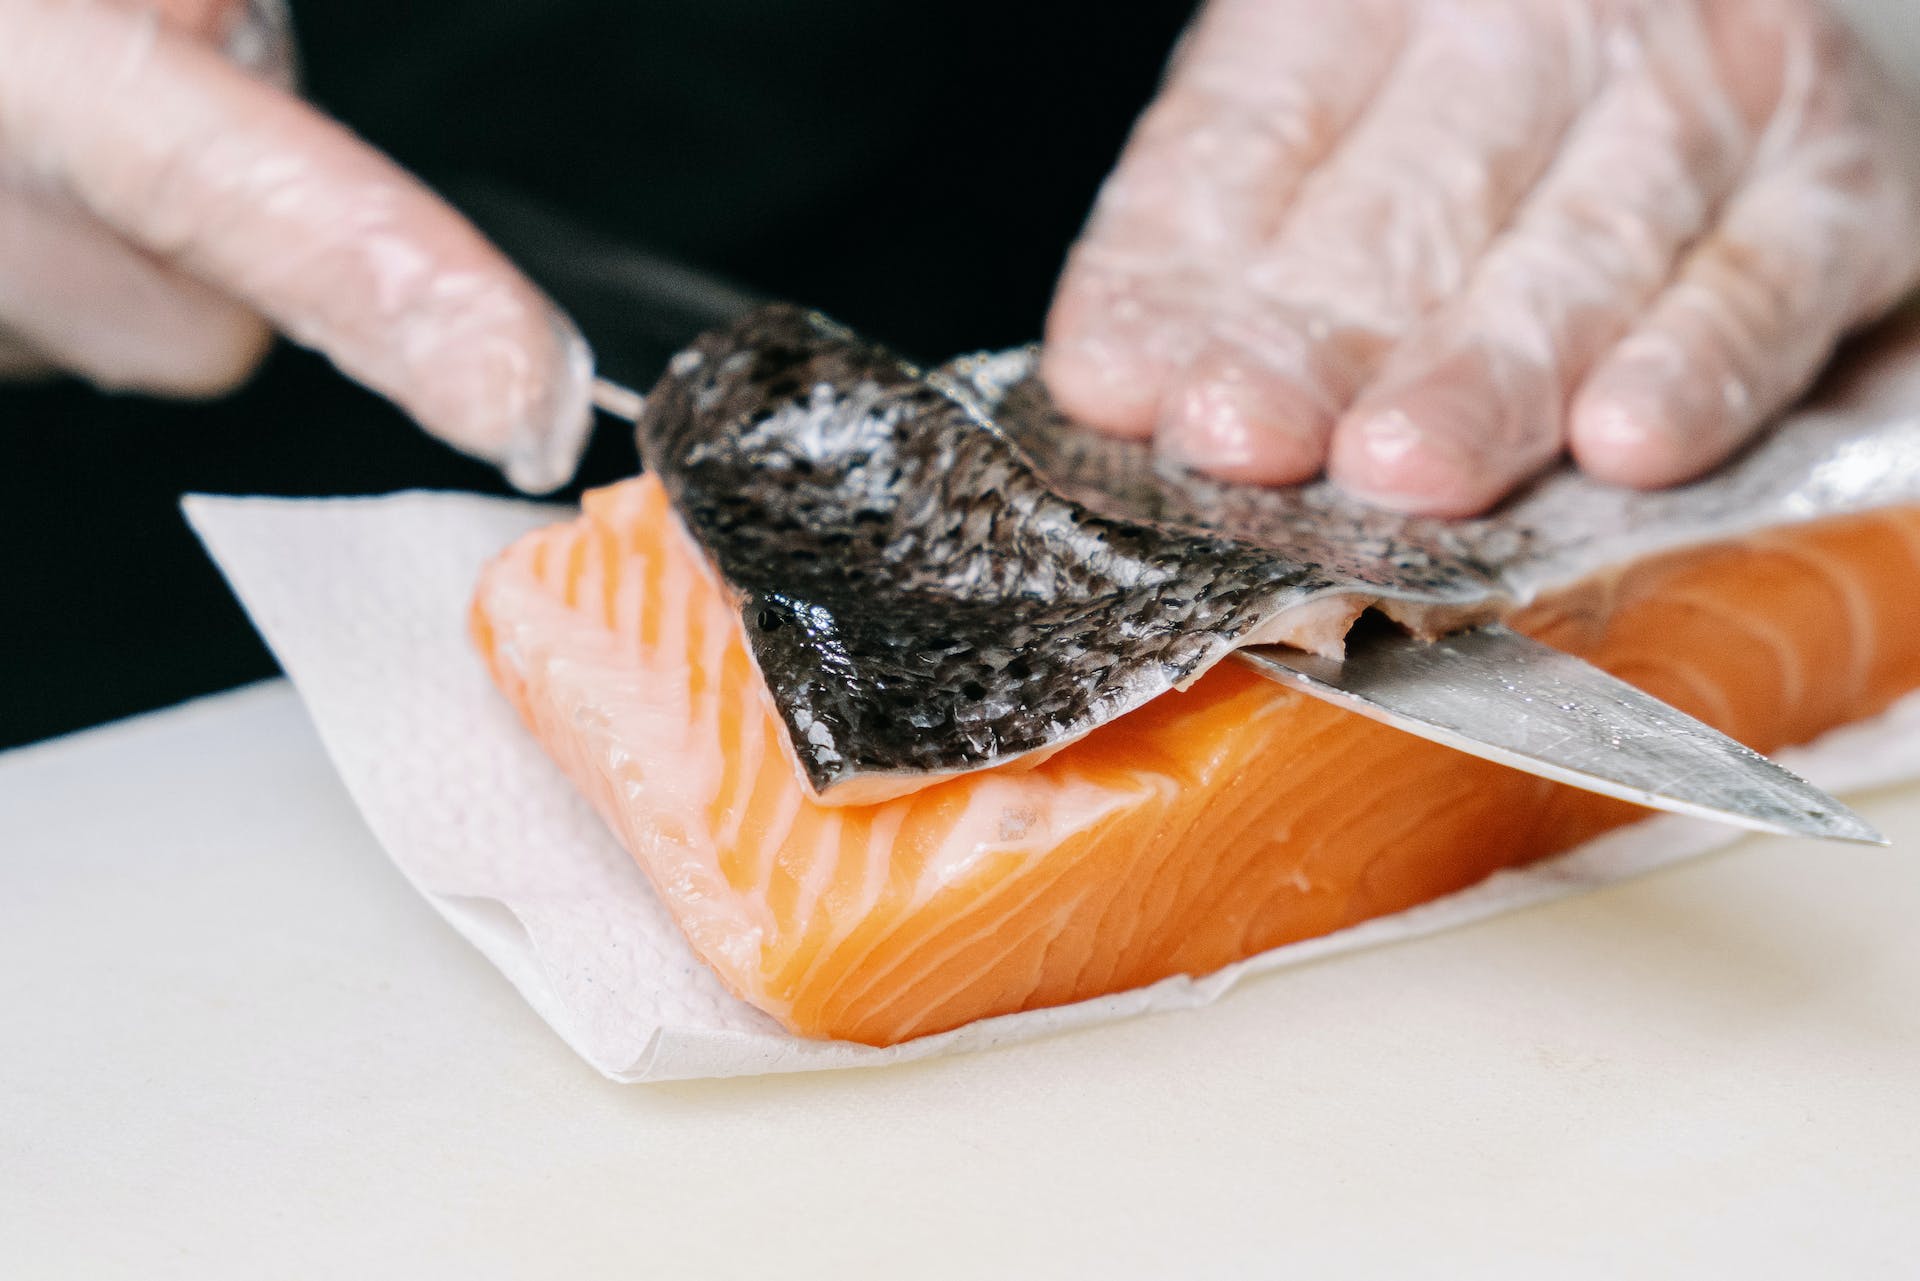 Según la Organización de las Naciones Unidas para la Alimentación y la Agricultura (FAO), el salmón es el segundo pescado más consumido en el mundo después del atún. Foto: Ivan Samkov/Pexels.